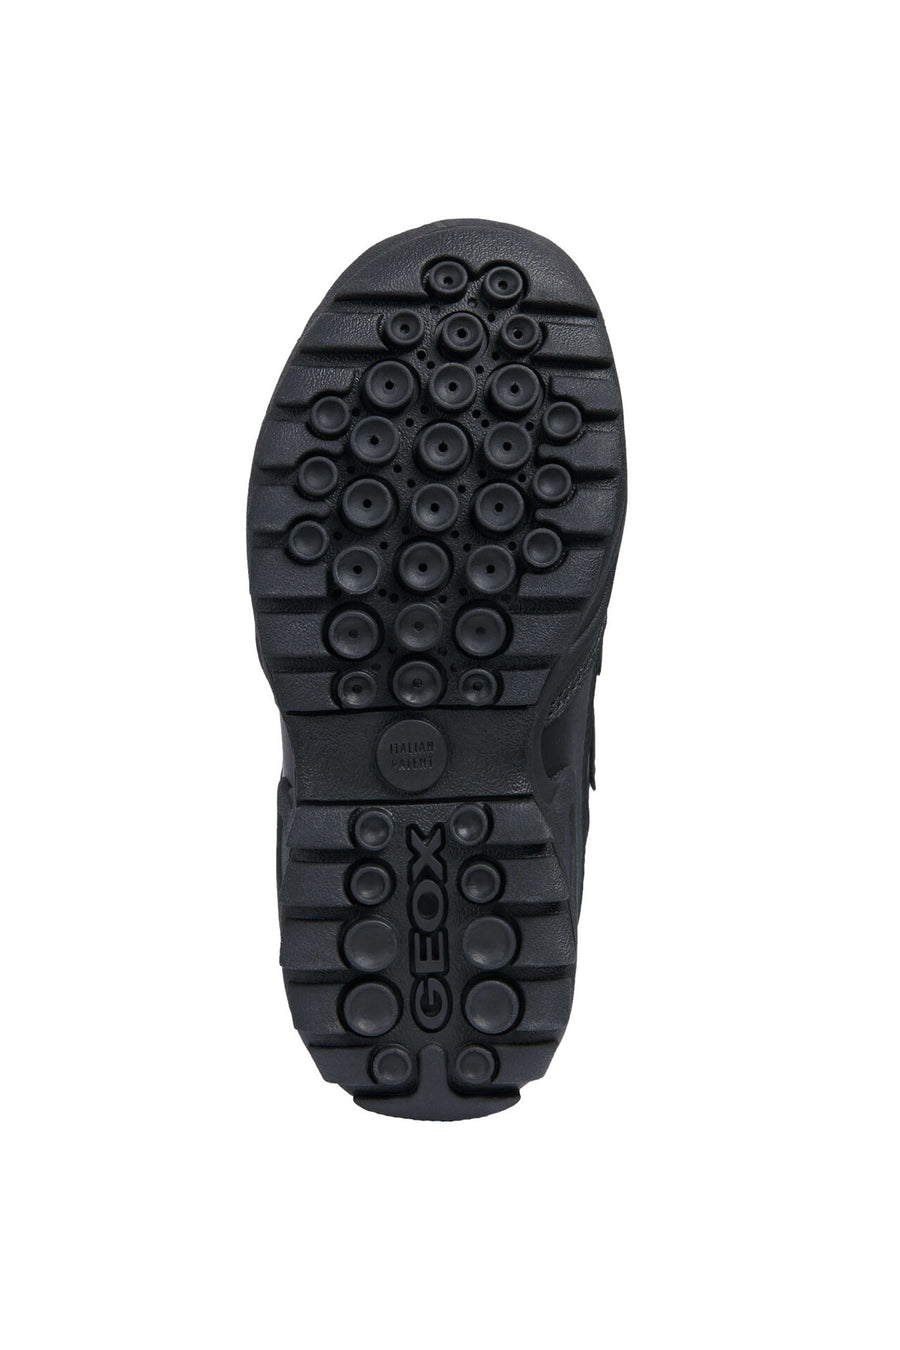 Geox Waterproof Shoes|Savage Tex|Black Leather